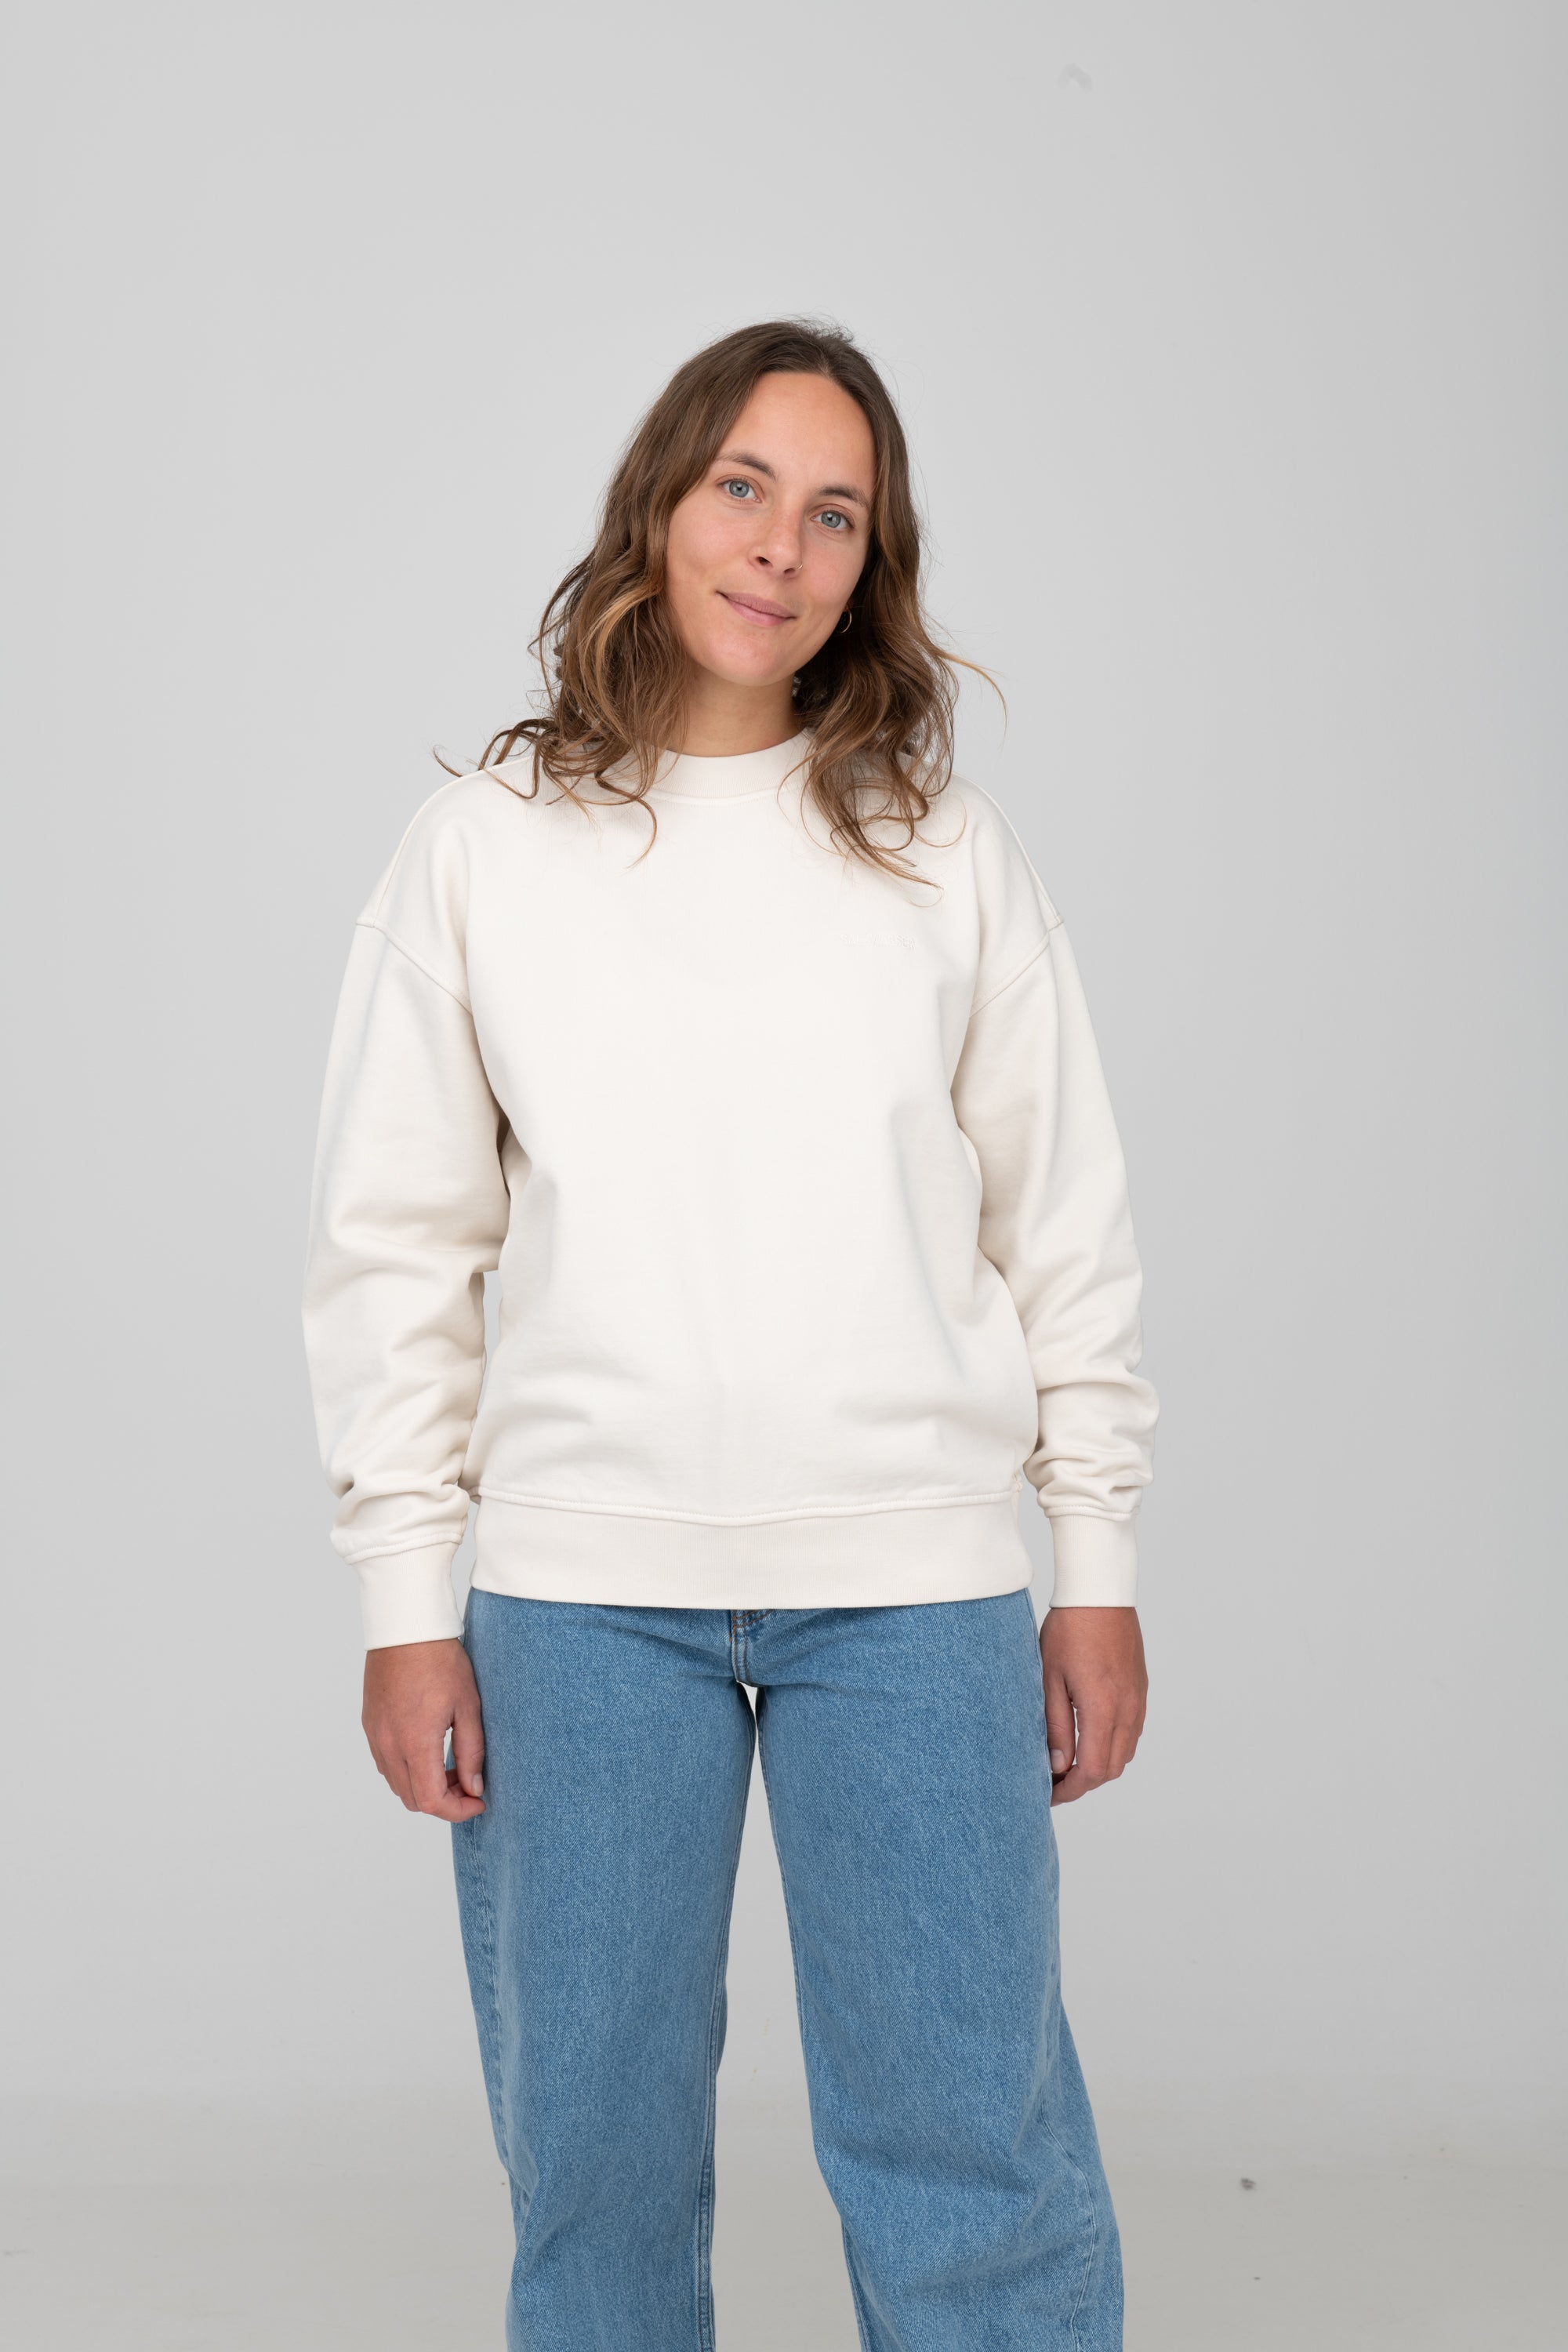 auffallender Sweater in Off-White bei SALZWASSER zu kaufen